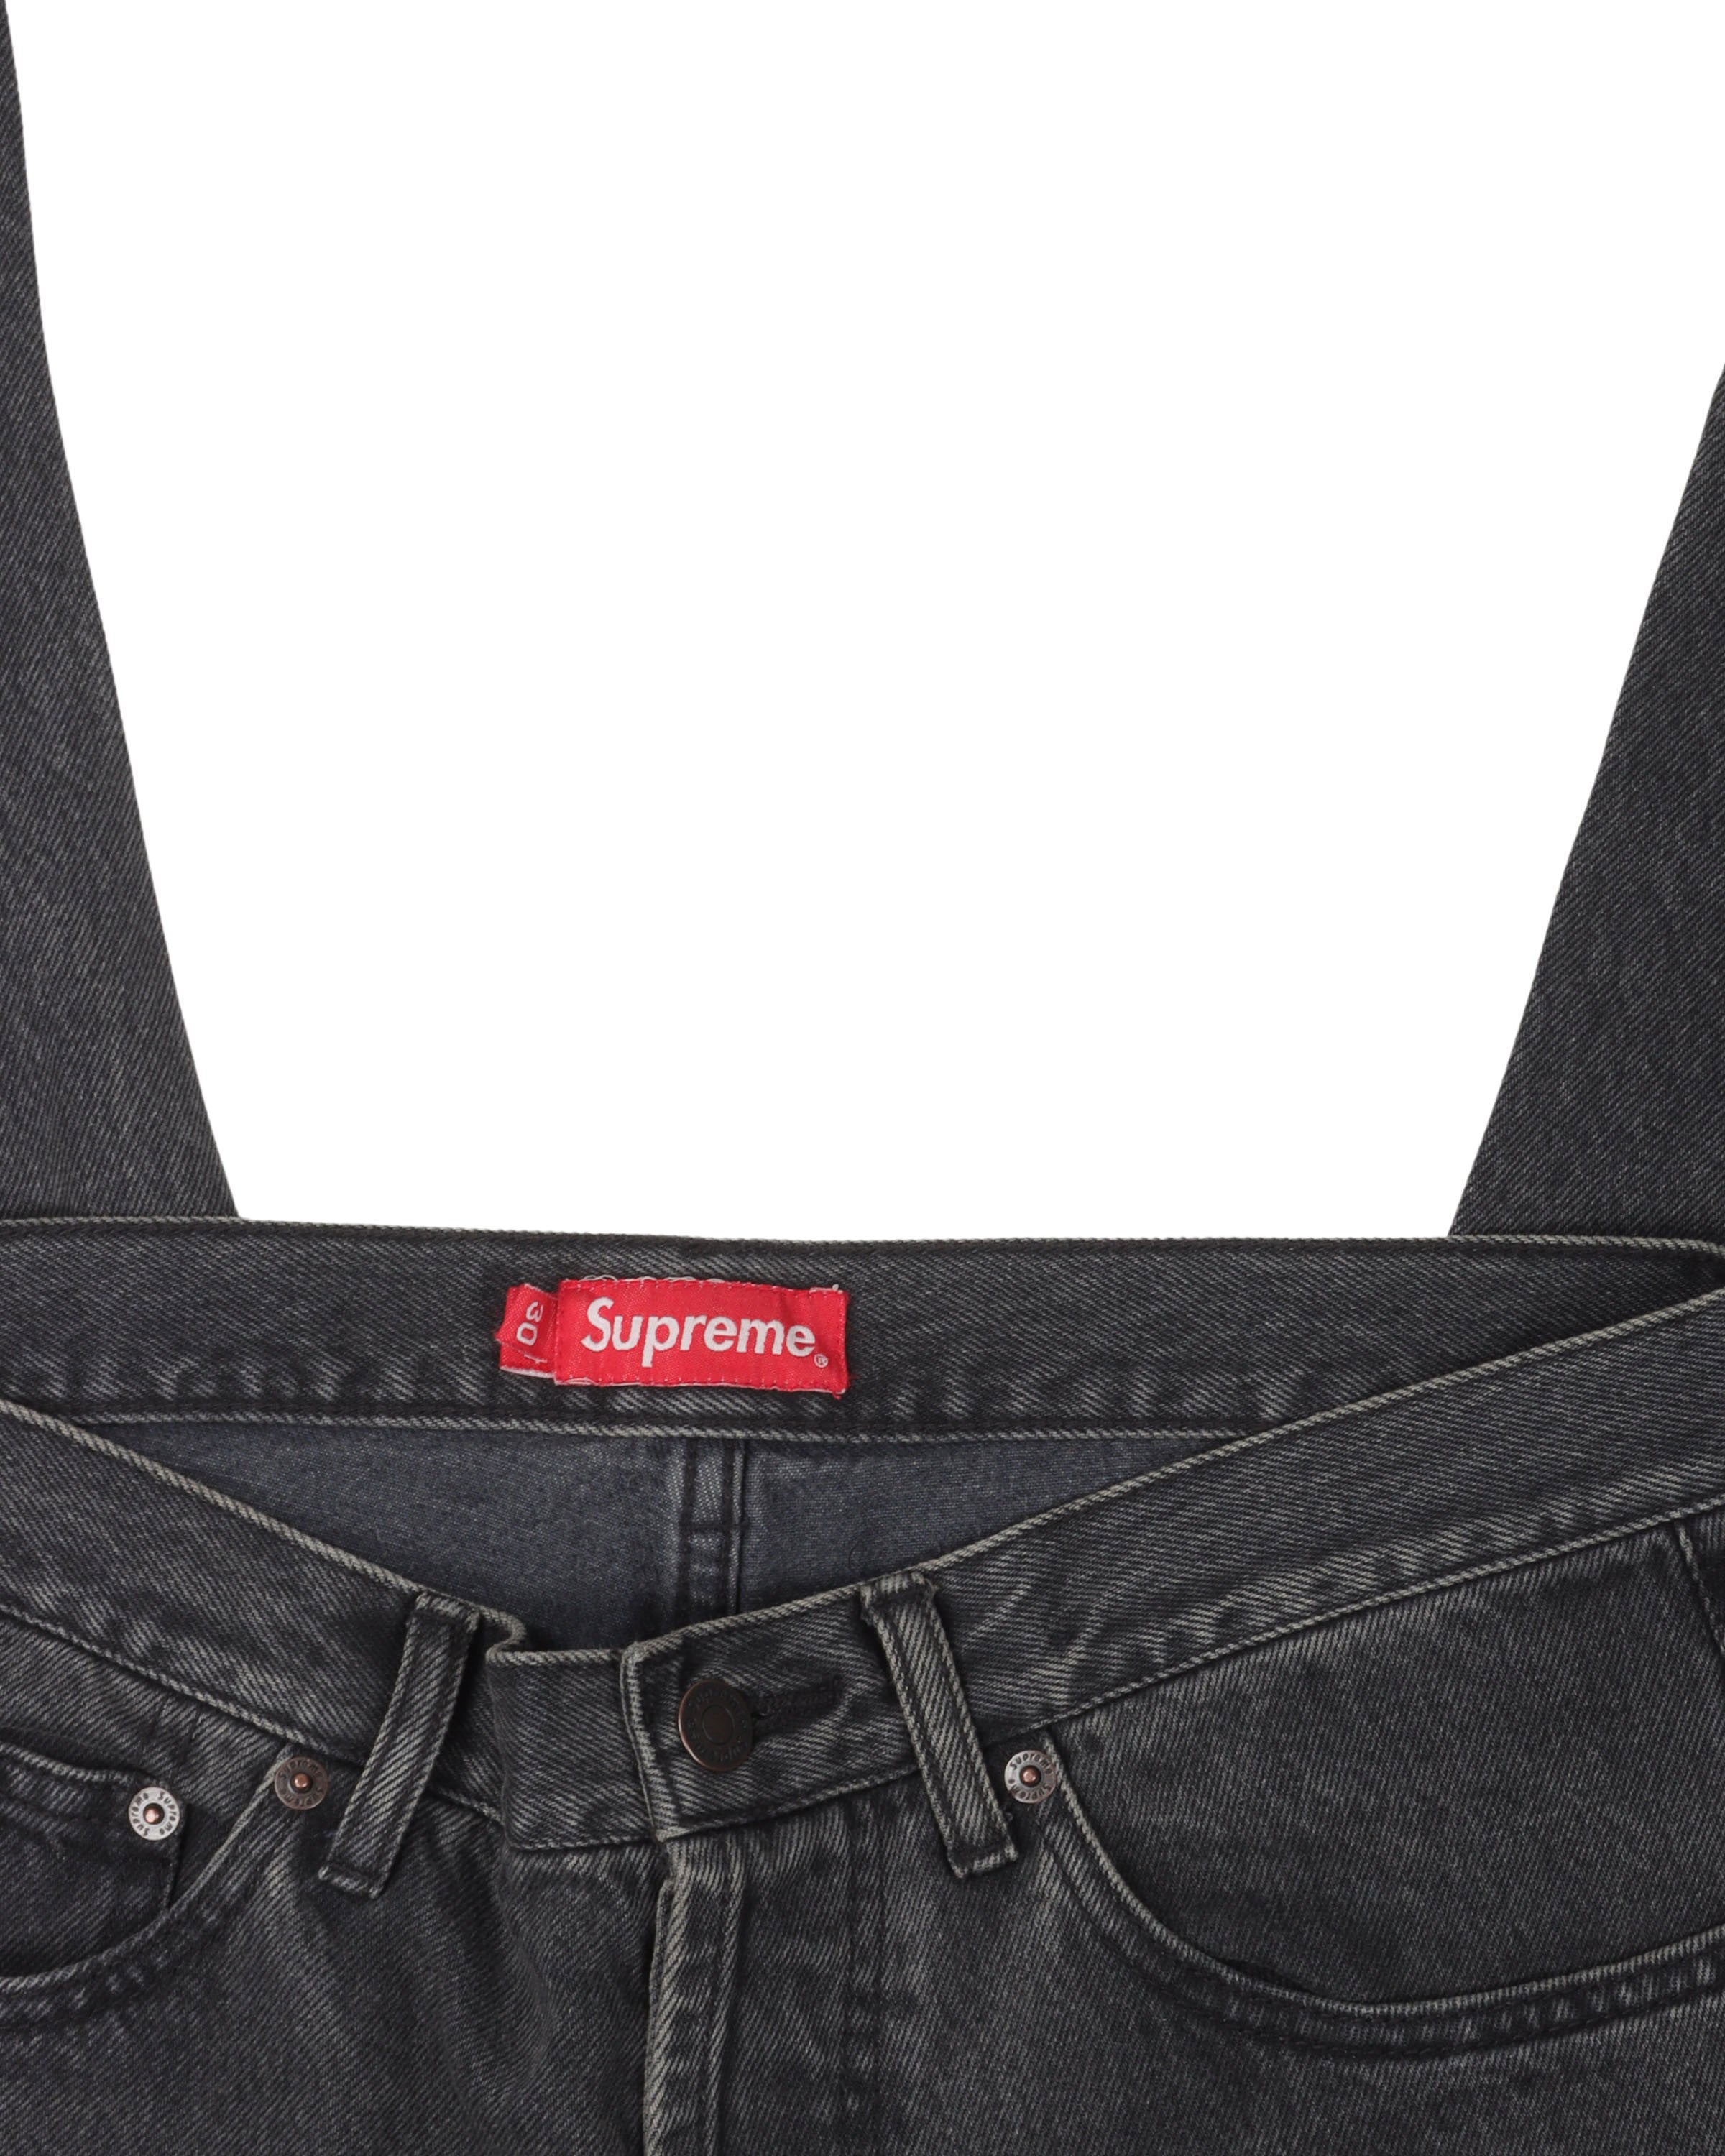 100%新品大人気supreme regular jeans パンツ